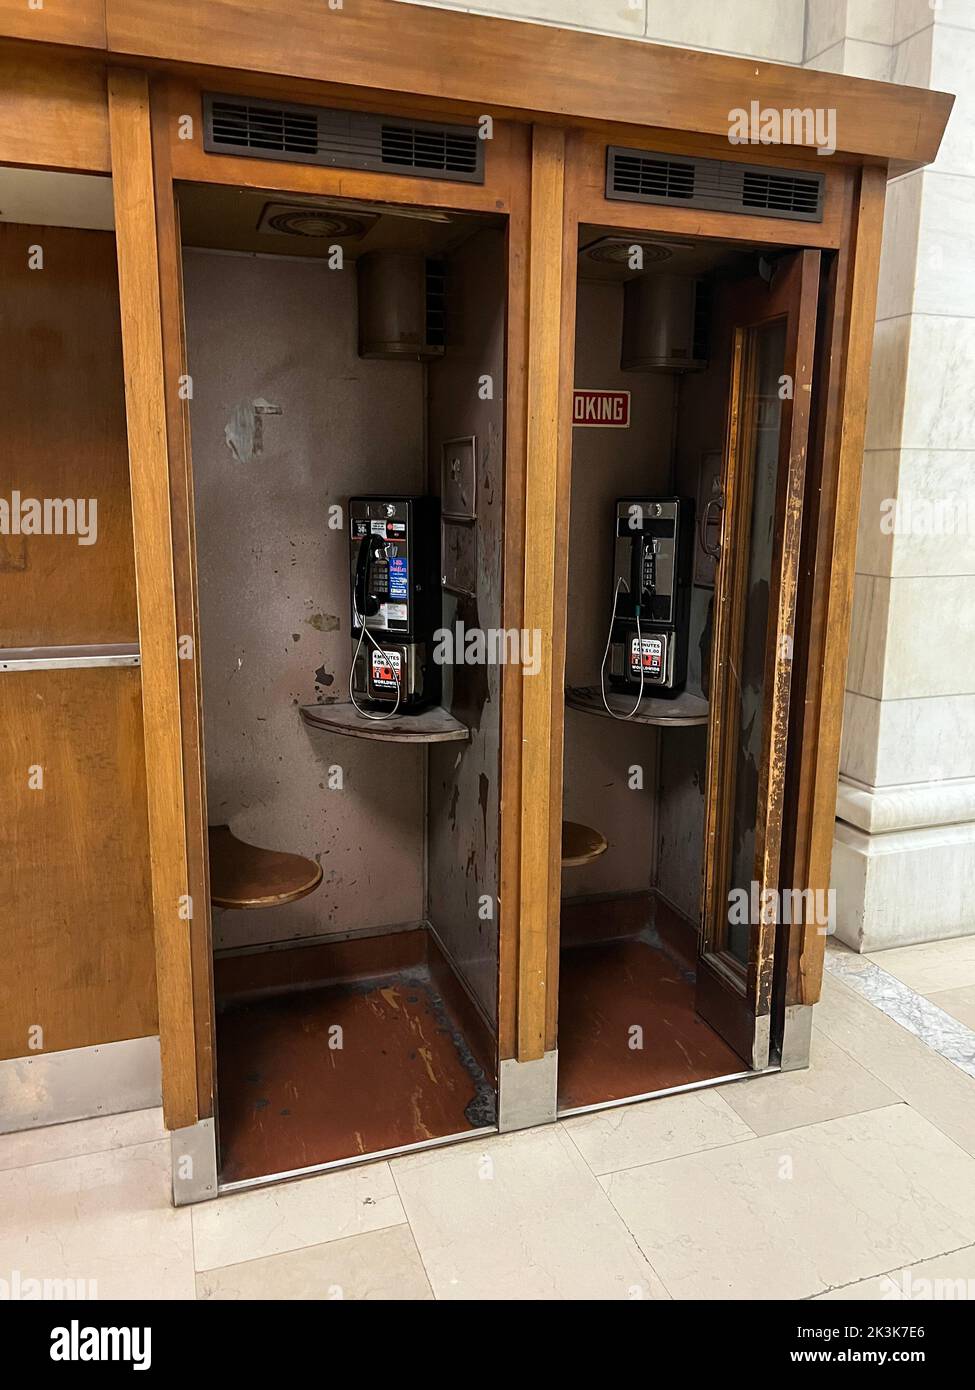 Les cabines téléphoniques se trouvent toujours dans la bibliothèque publique de New York, devenant un morceau historique de technologie à 42nd Street, New York City. Banque D'Images